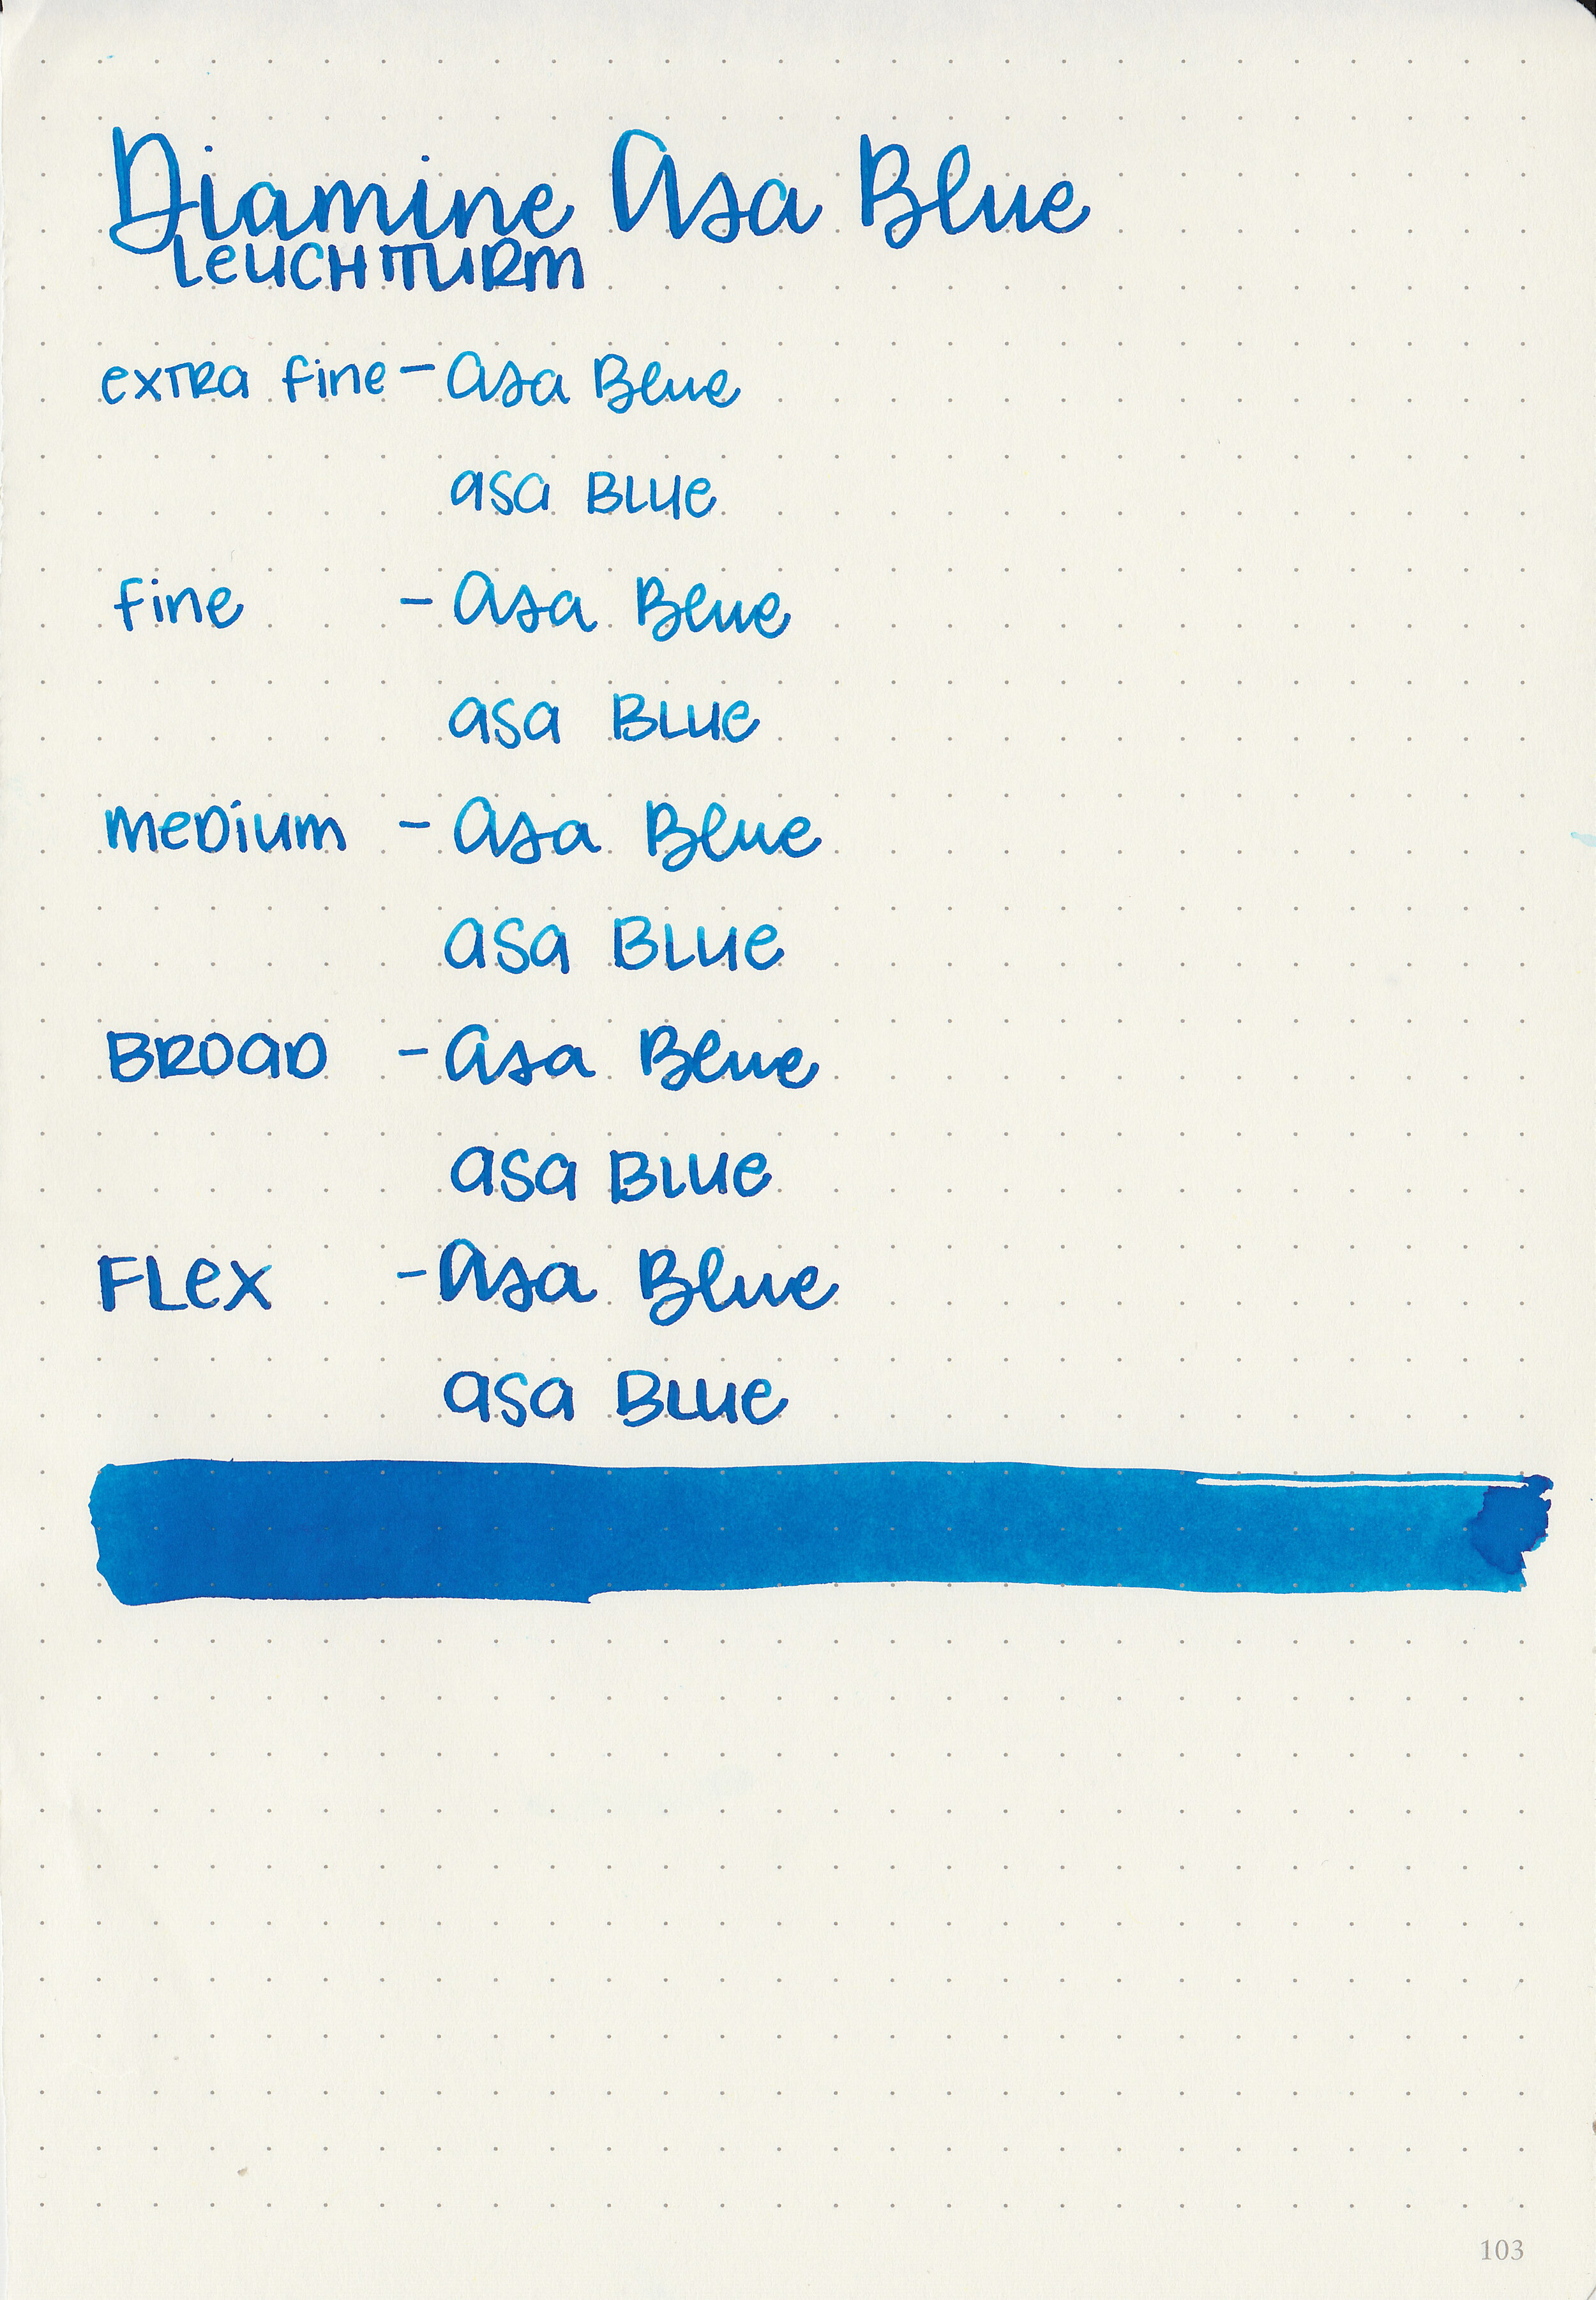 d-asa-blue-9.jpg